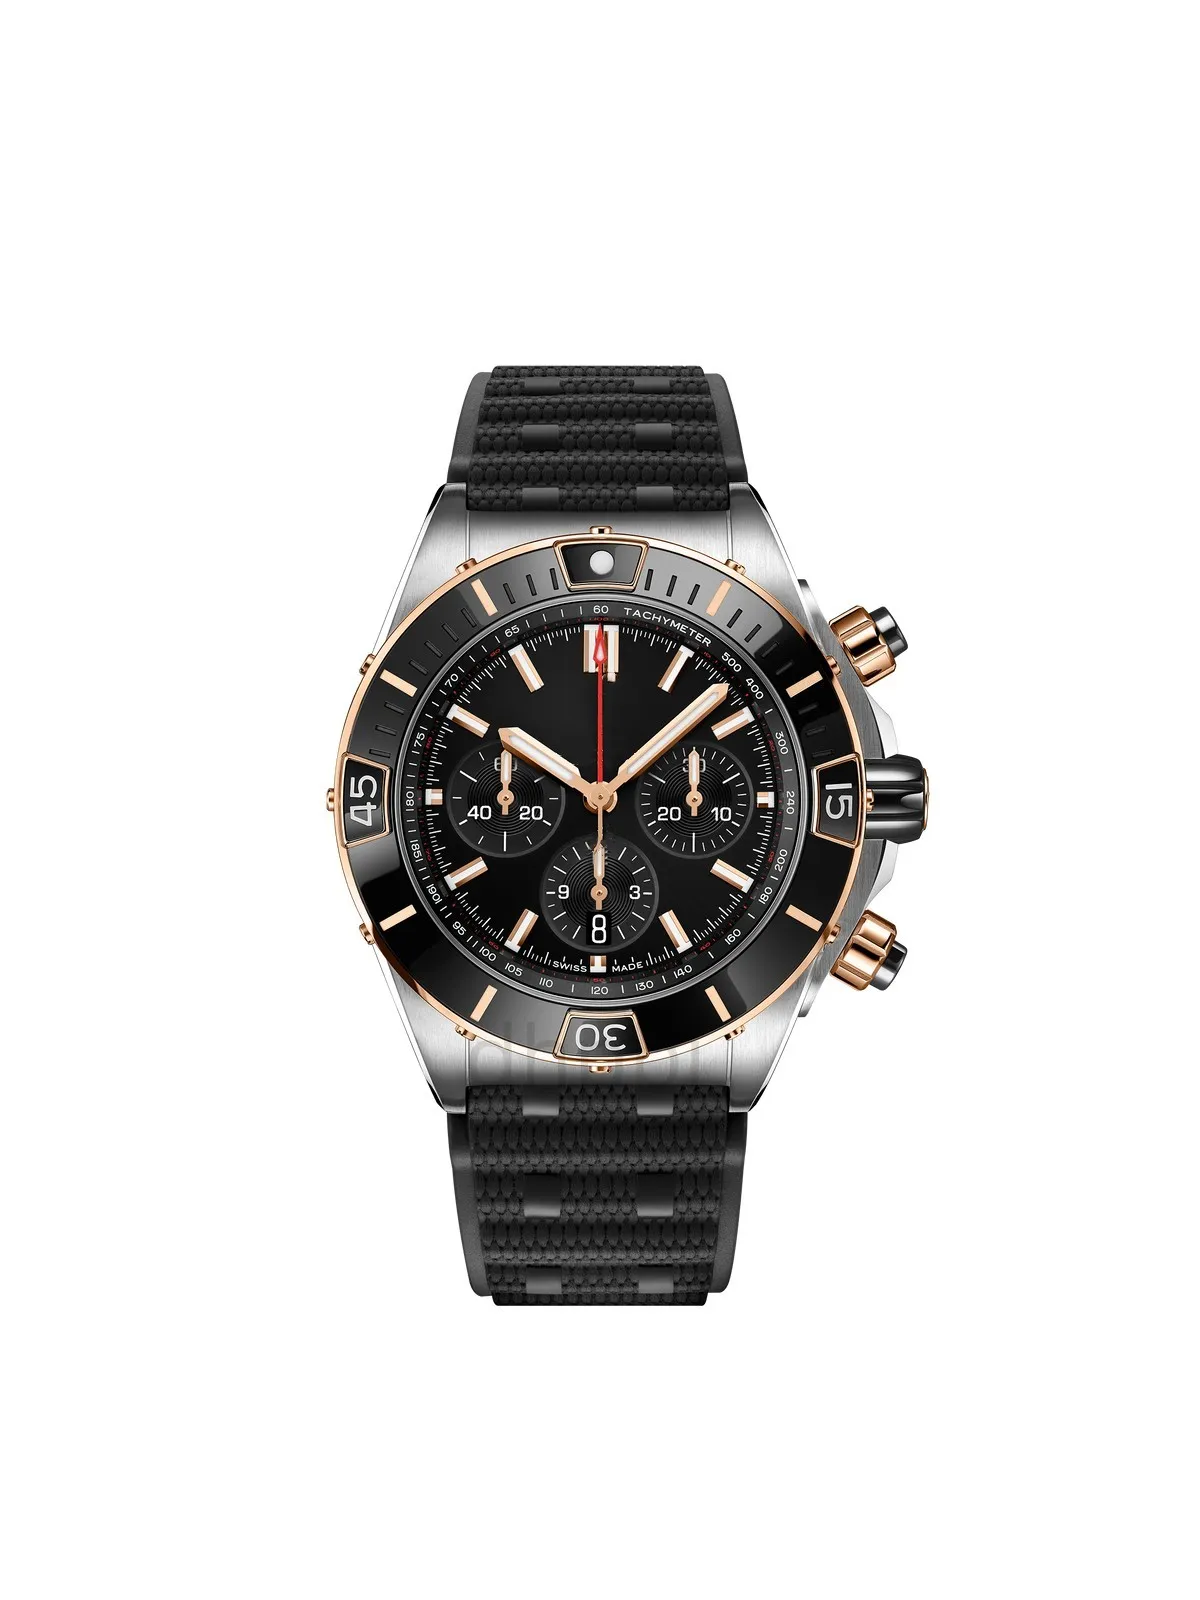 メンズ腕時計自動機械式時計デザイナー腕時計 44 ミリメートル vesace ショックウォッチファッションビジネスウォッチマン高品質ブランド腕時計ウォッチ Montre De Luxe アイスアウト UHR